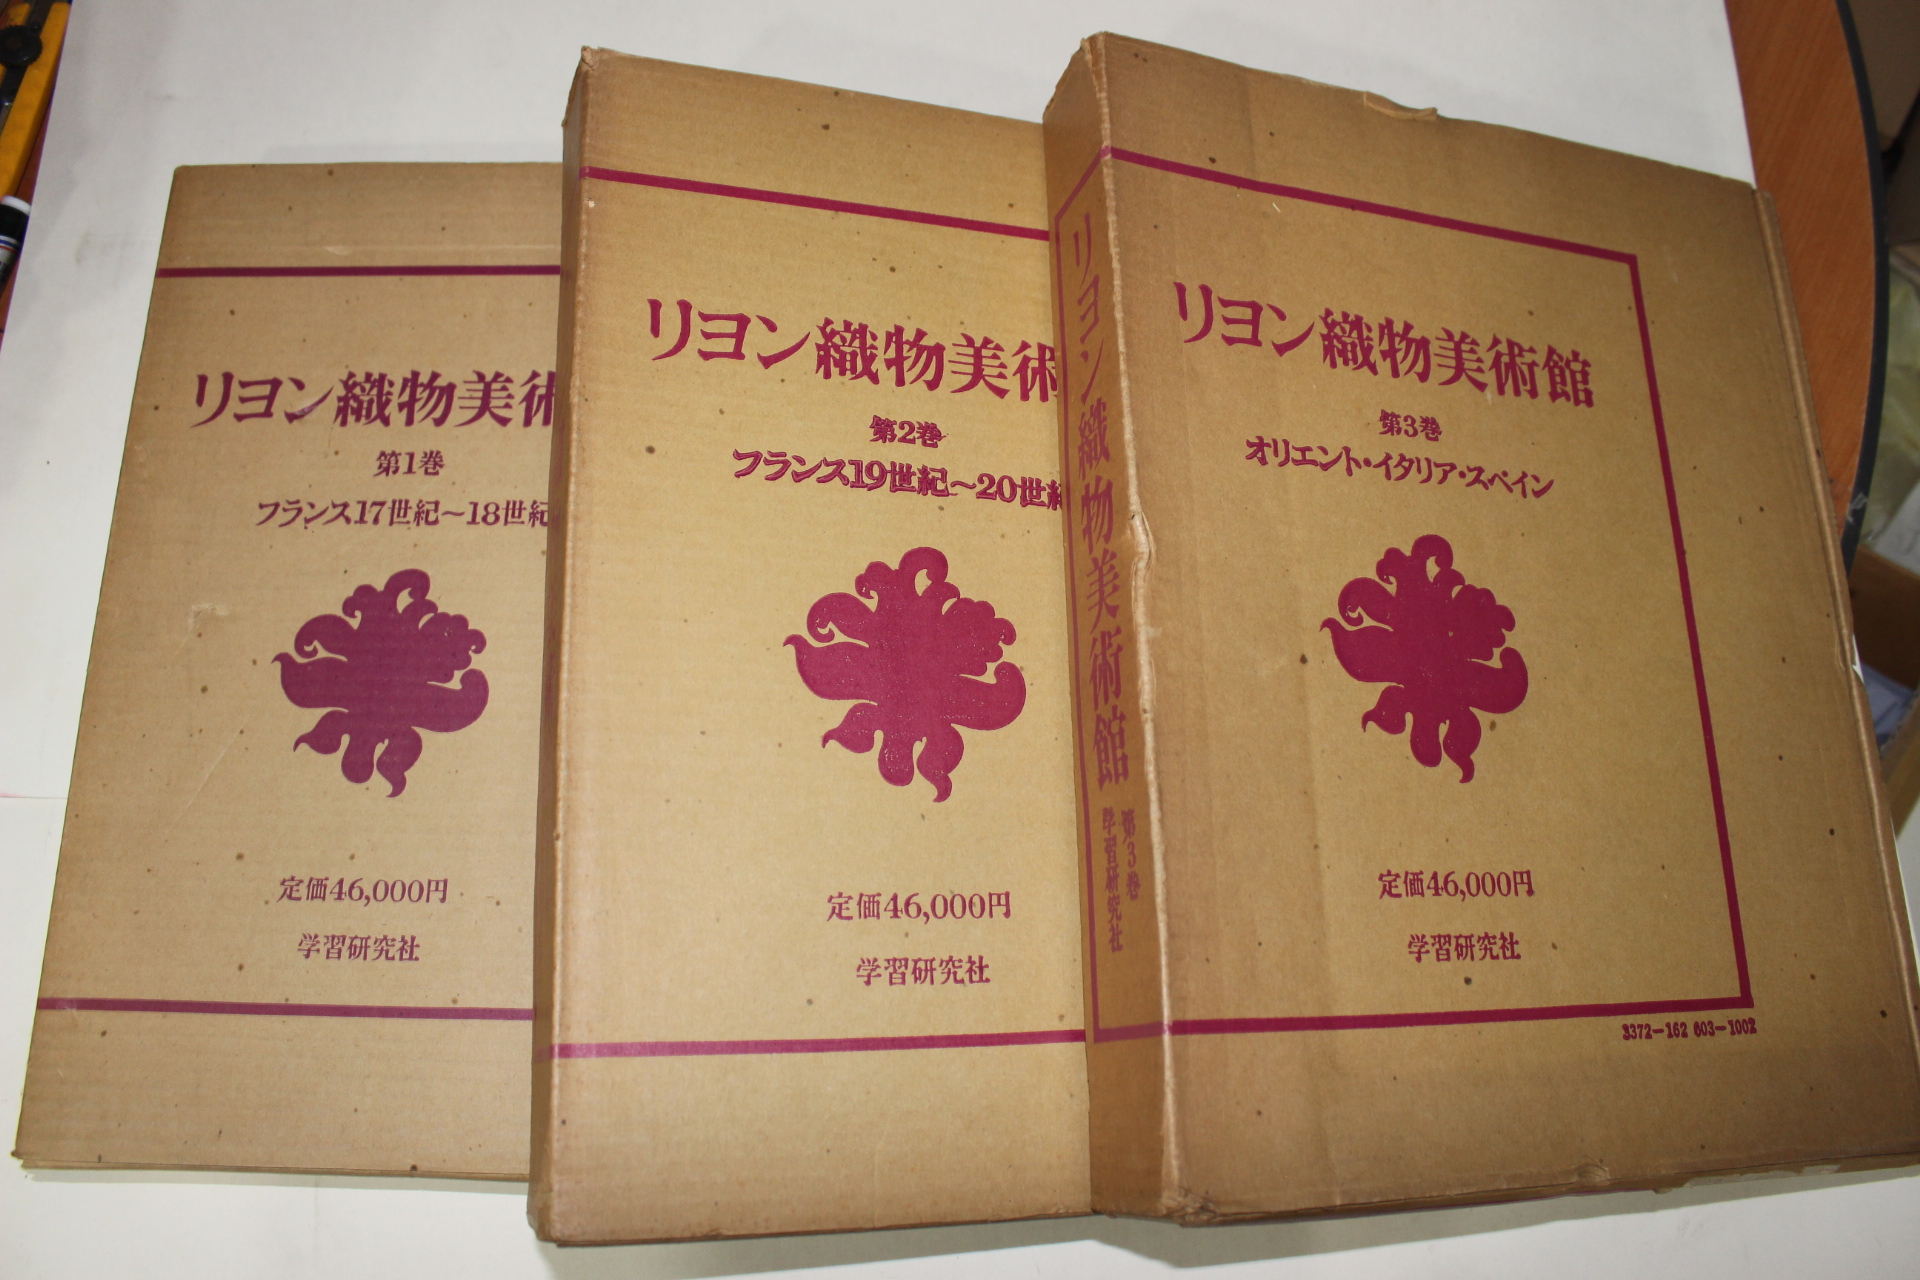 1976년 직물미술관(織物美術館) 도록 3책